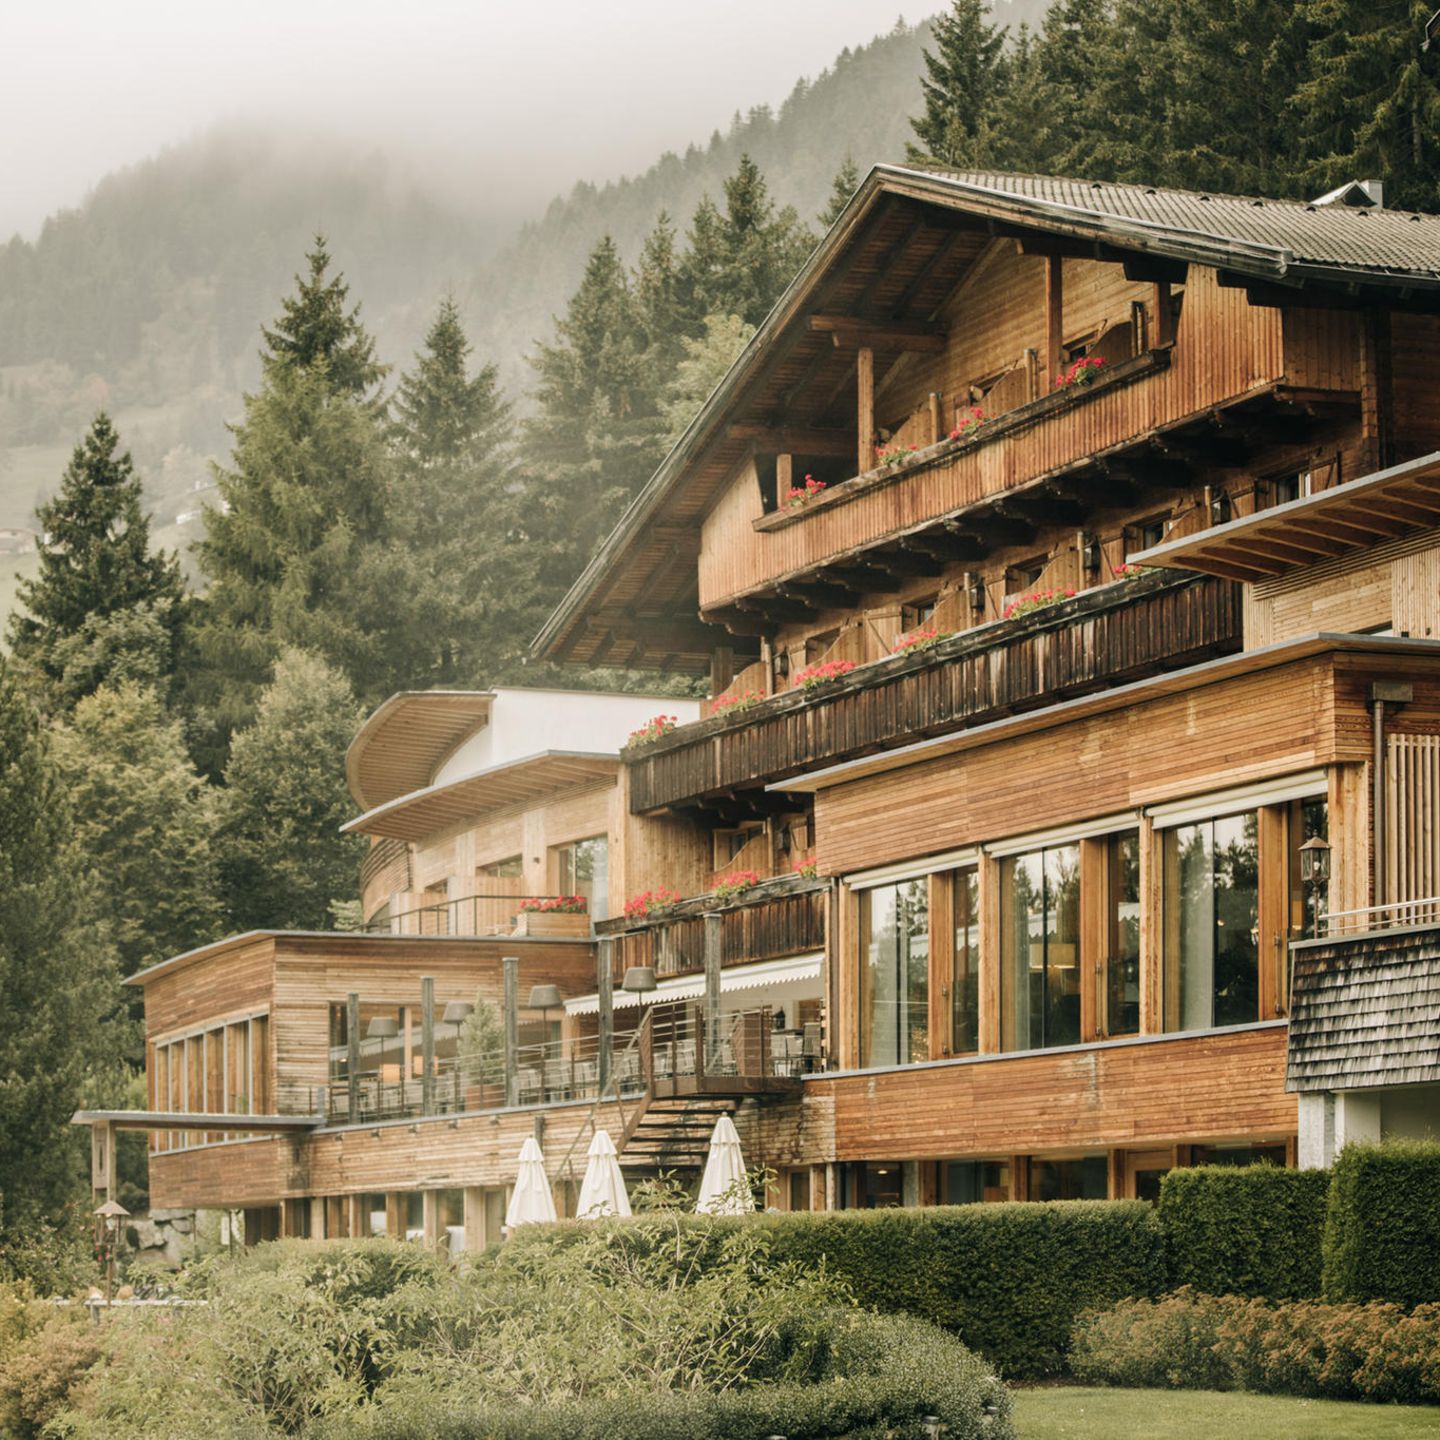 Das Vier-Sterne-Superior Naturhotel Leitlhof liegt in Innichen in den Südtiroler Dolomiten. Es hat einen Spa-Bereich mit Saunen, Dampfbädern, Pools und Massagen im Angebot – und das wunderschöne Ambiente inmitten der Dolomiten gibt es umsonst dazu. Was braucht es mehr, um sich nach einem erlebnisreichen Tag zu entspannen? Das 4-Sterne-Hotel Leitlhof wird mit einem eigenen Holzkraftwerk betrieben und ist damit CO2-neutral. Für das leckere Essen gibt es einen biologischen Bauernhof mit naturnaher Rinderzucht. Auch Obst und Gemüse werden von dort bezogen. Weitere Infos unter: www.leitlhof.com